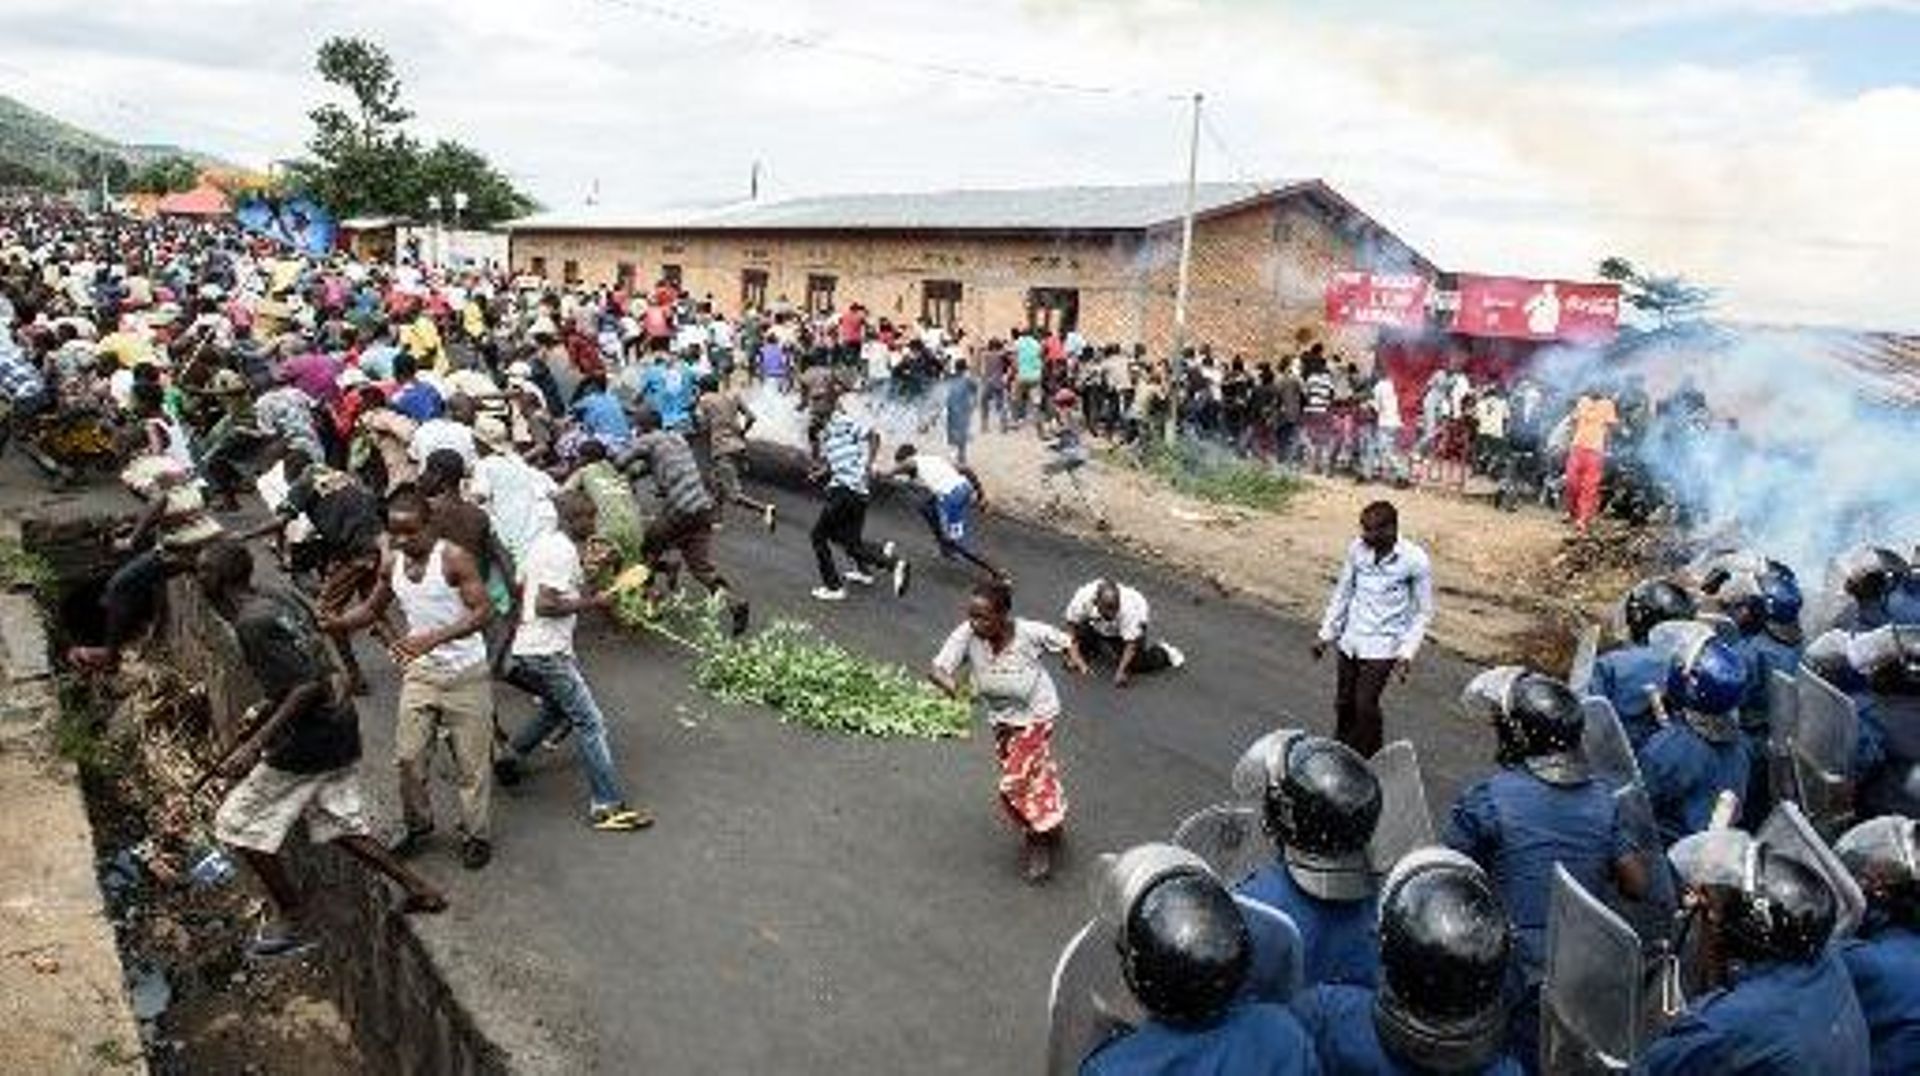 Manifestation d'opposants à un troisième mandat du président Nkurunziza à Bujumbura, le 13 mai 2015 